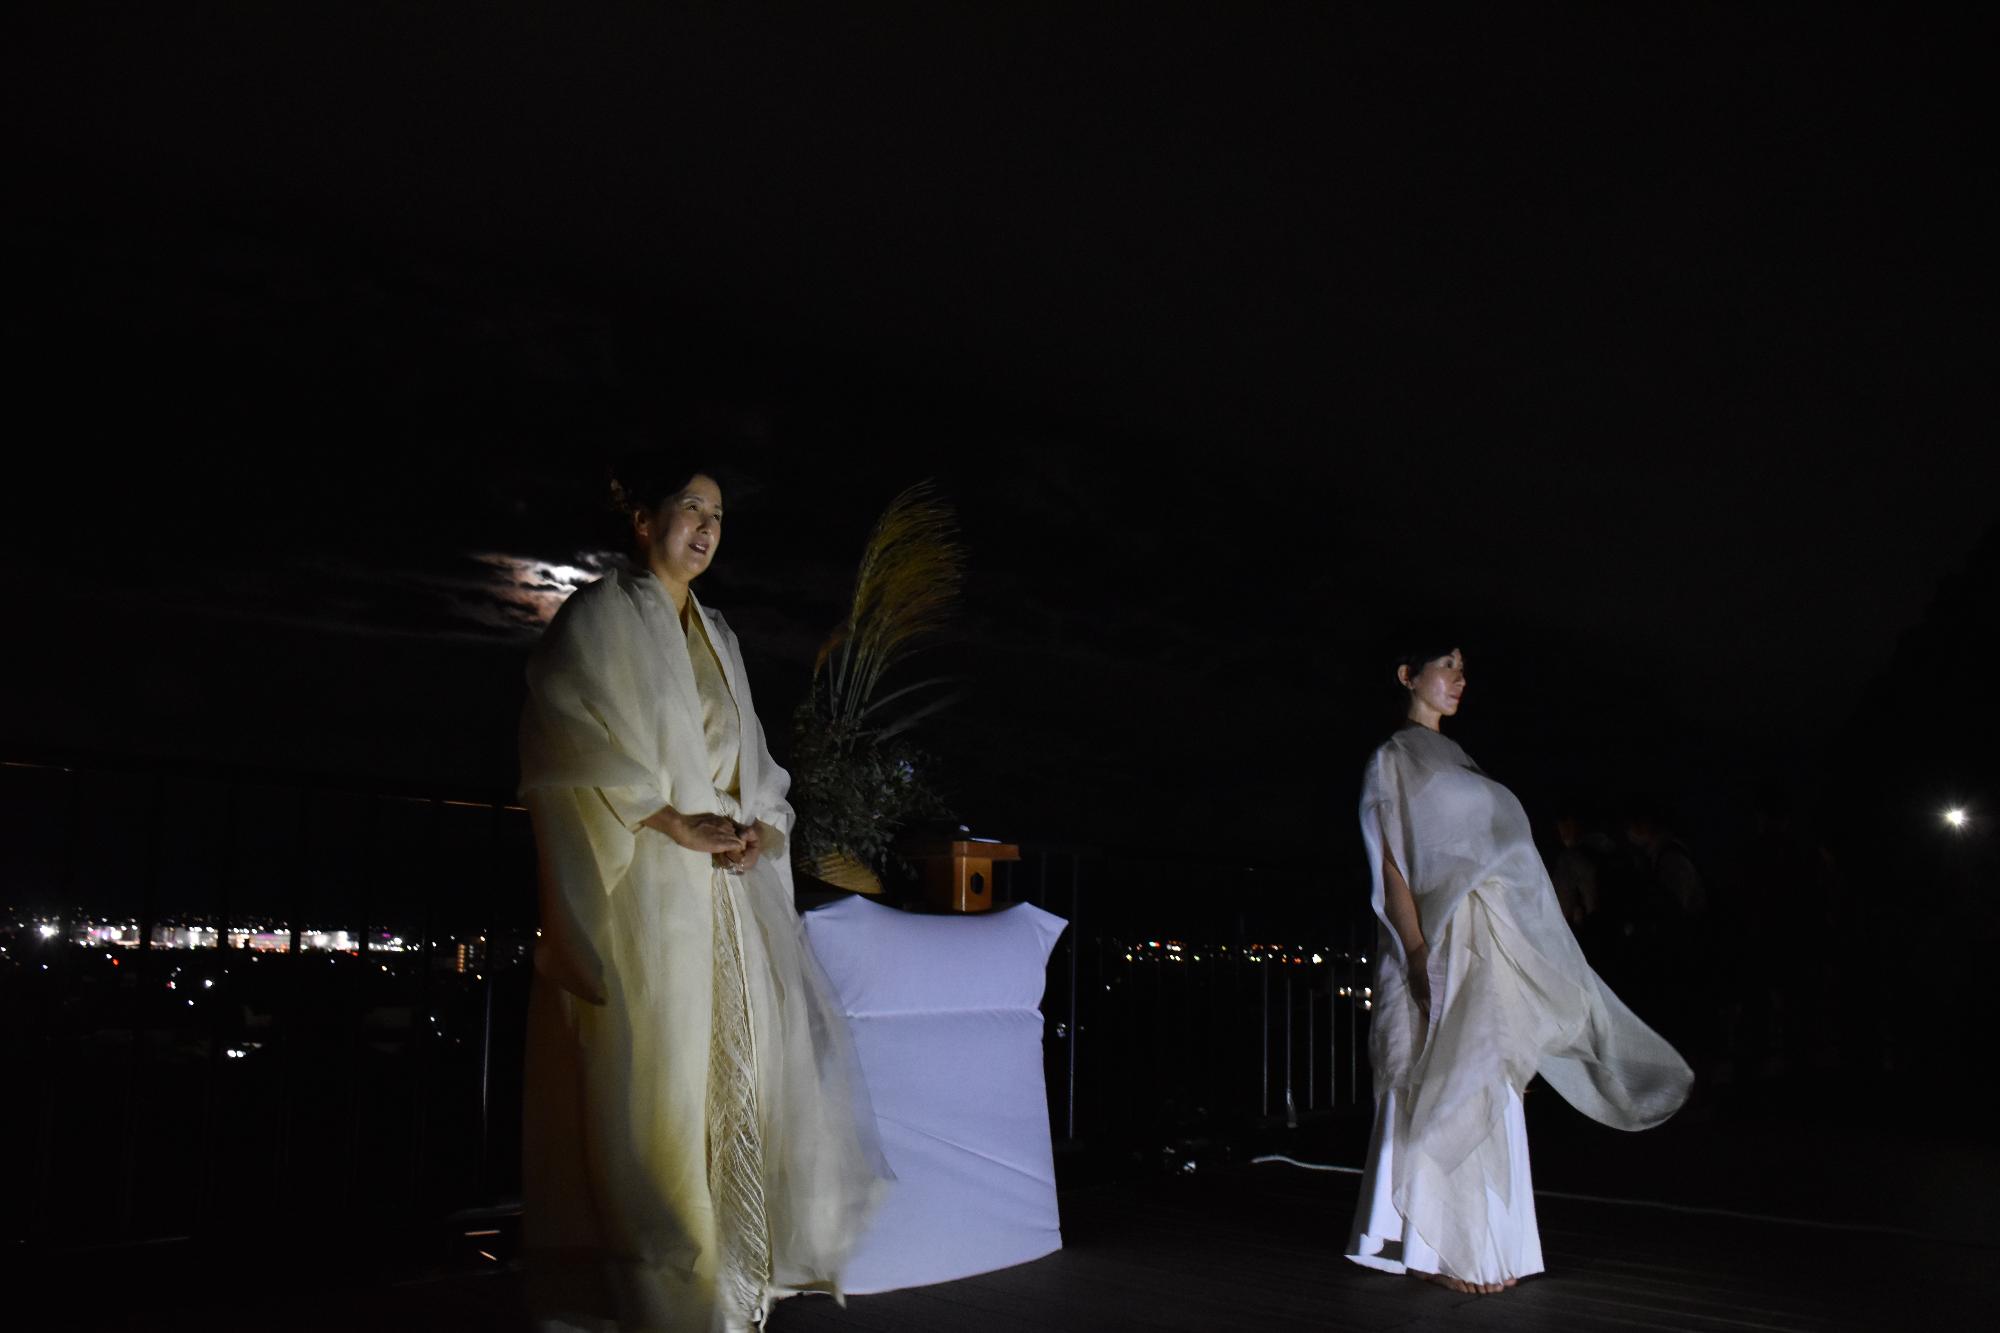 展望施設で古事記の朗誦を行う白い衣装を着た女性と、舞踊を披露する白い衣装を着た女性